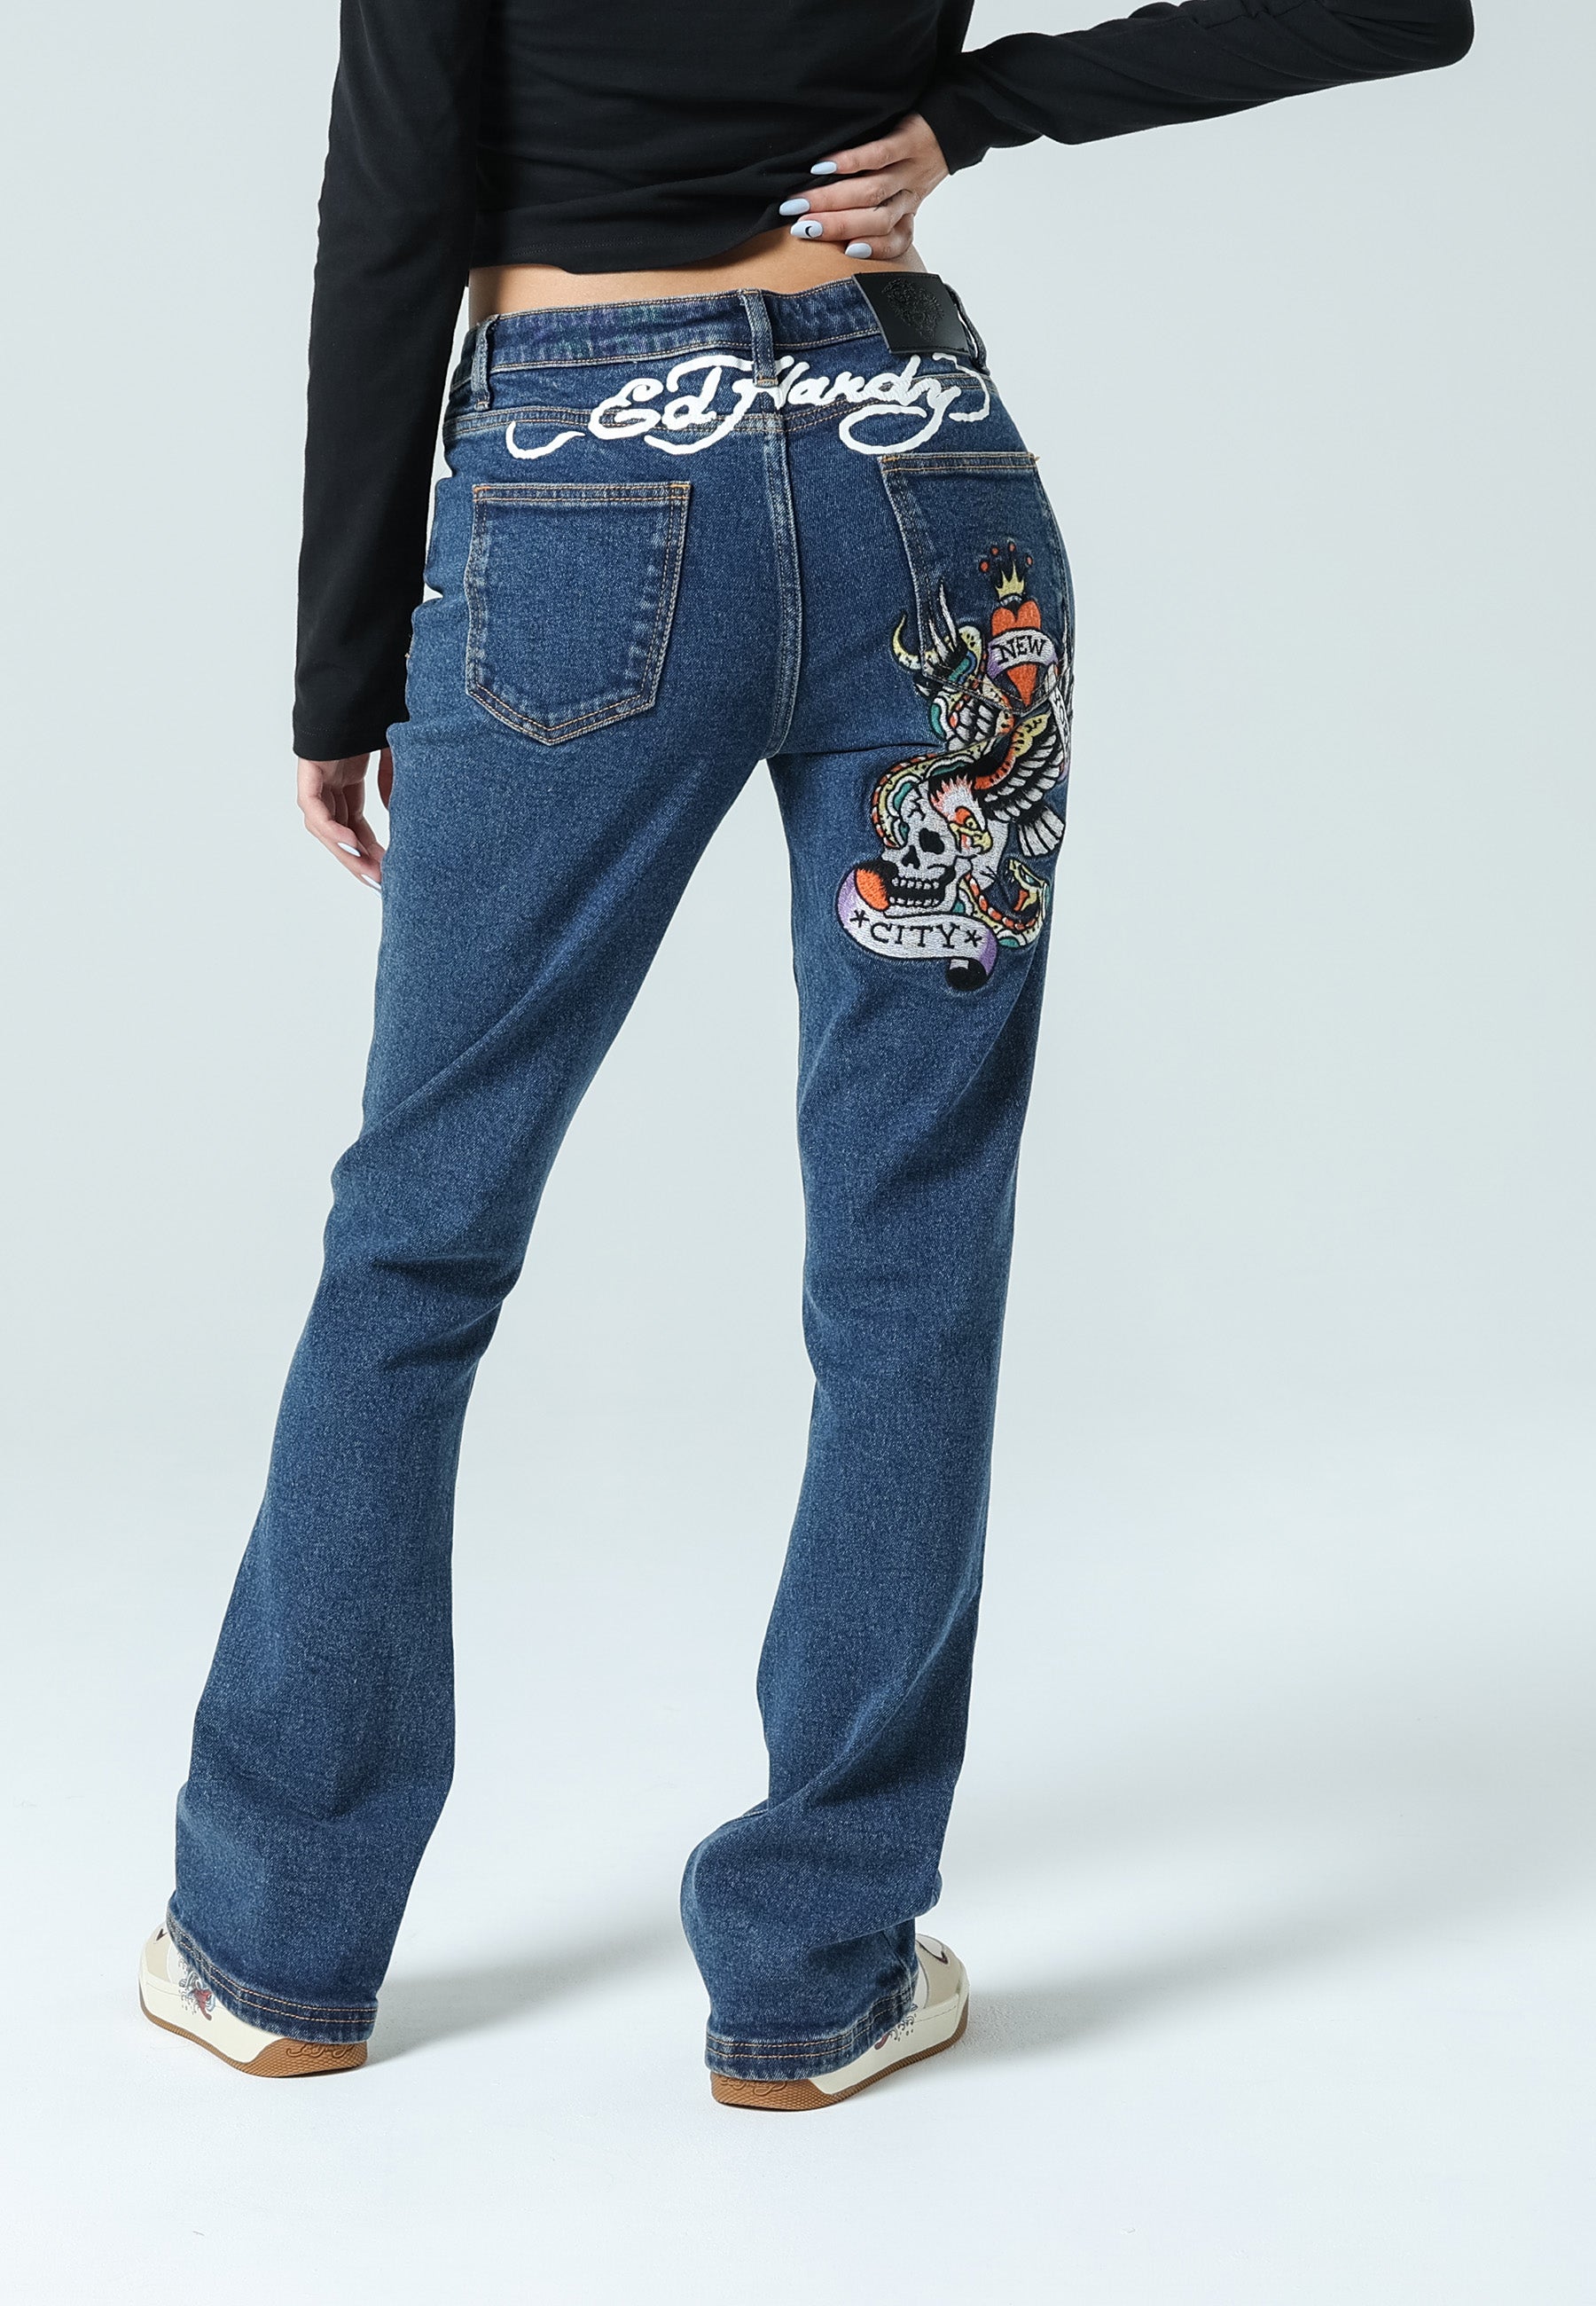 adviicd Weatherproof Vintage Pants for Men Fashion Men's City Tech Trouser  Straight Fit Smart 360 Tech Pants - Walmart.com